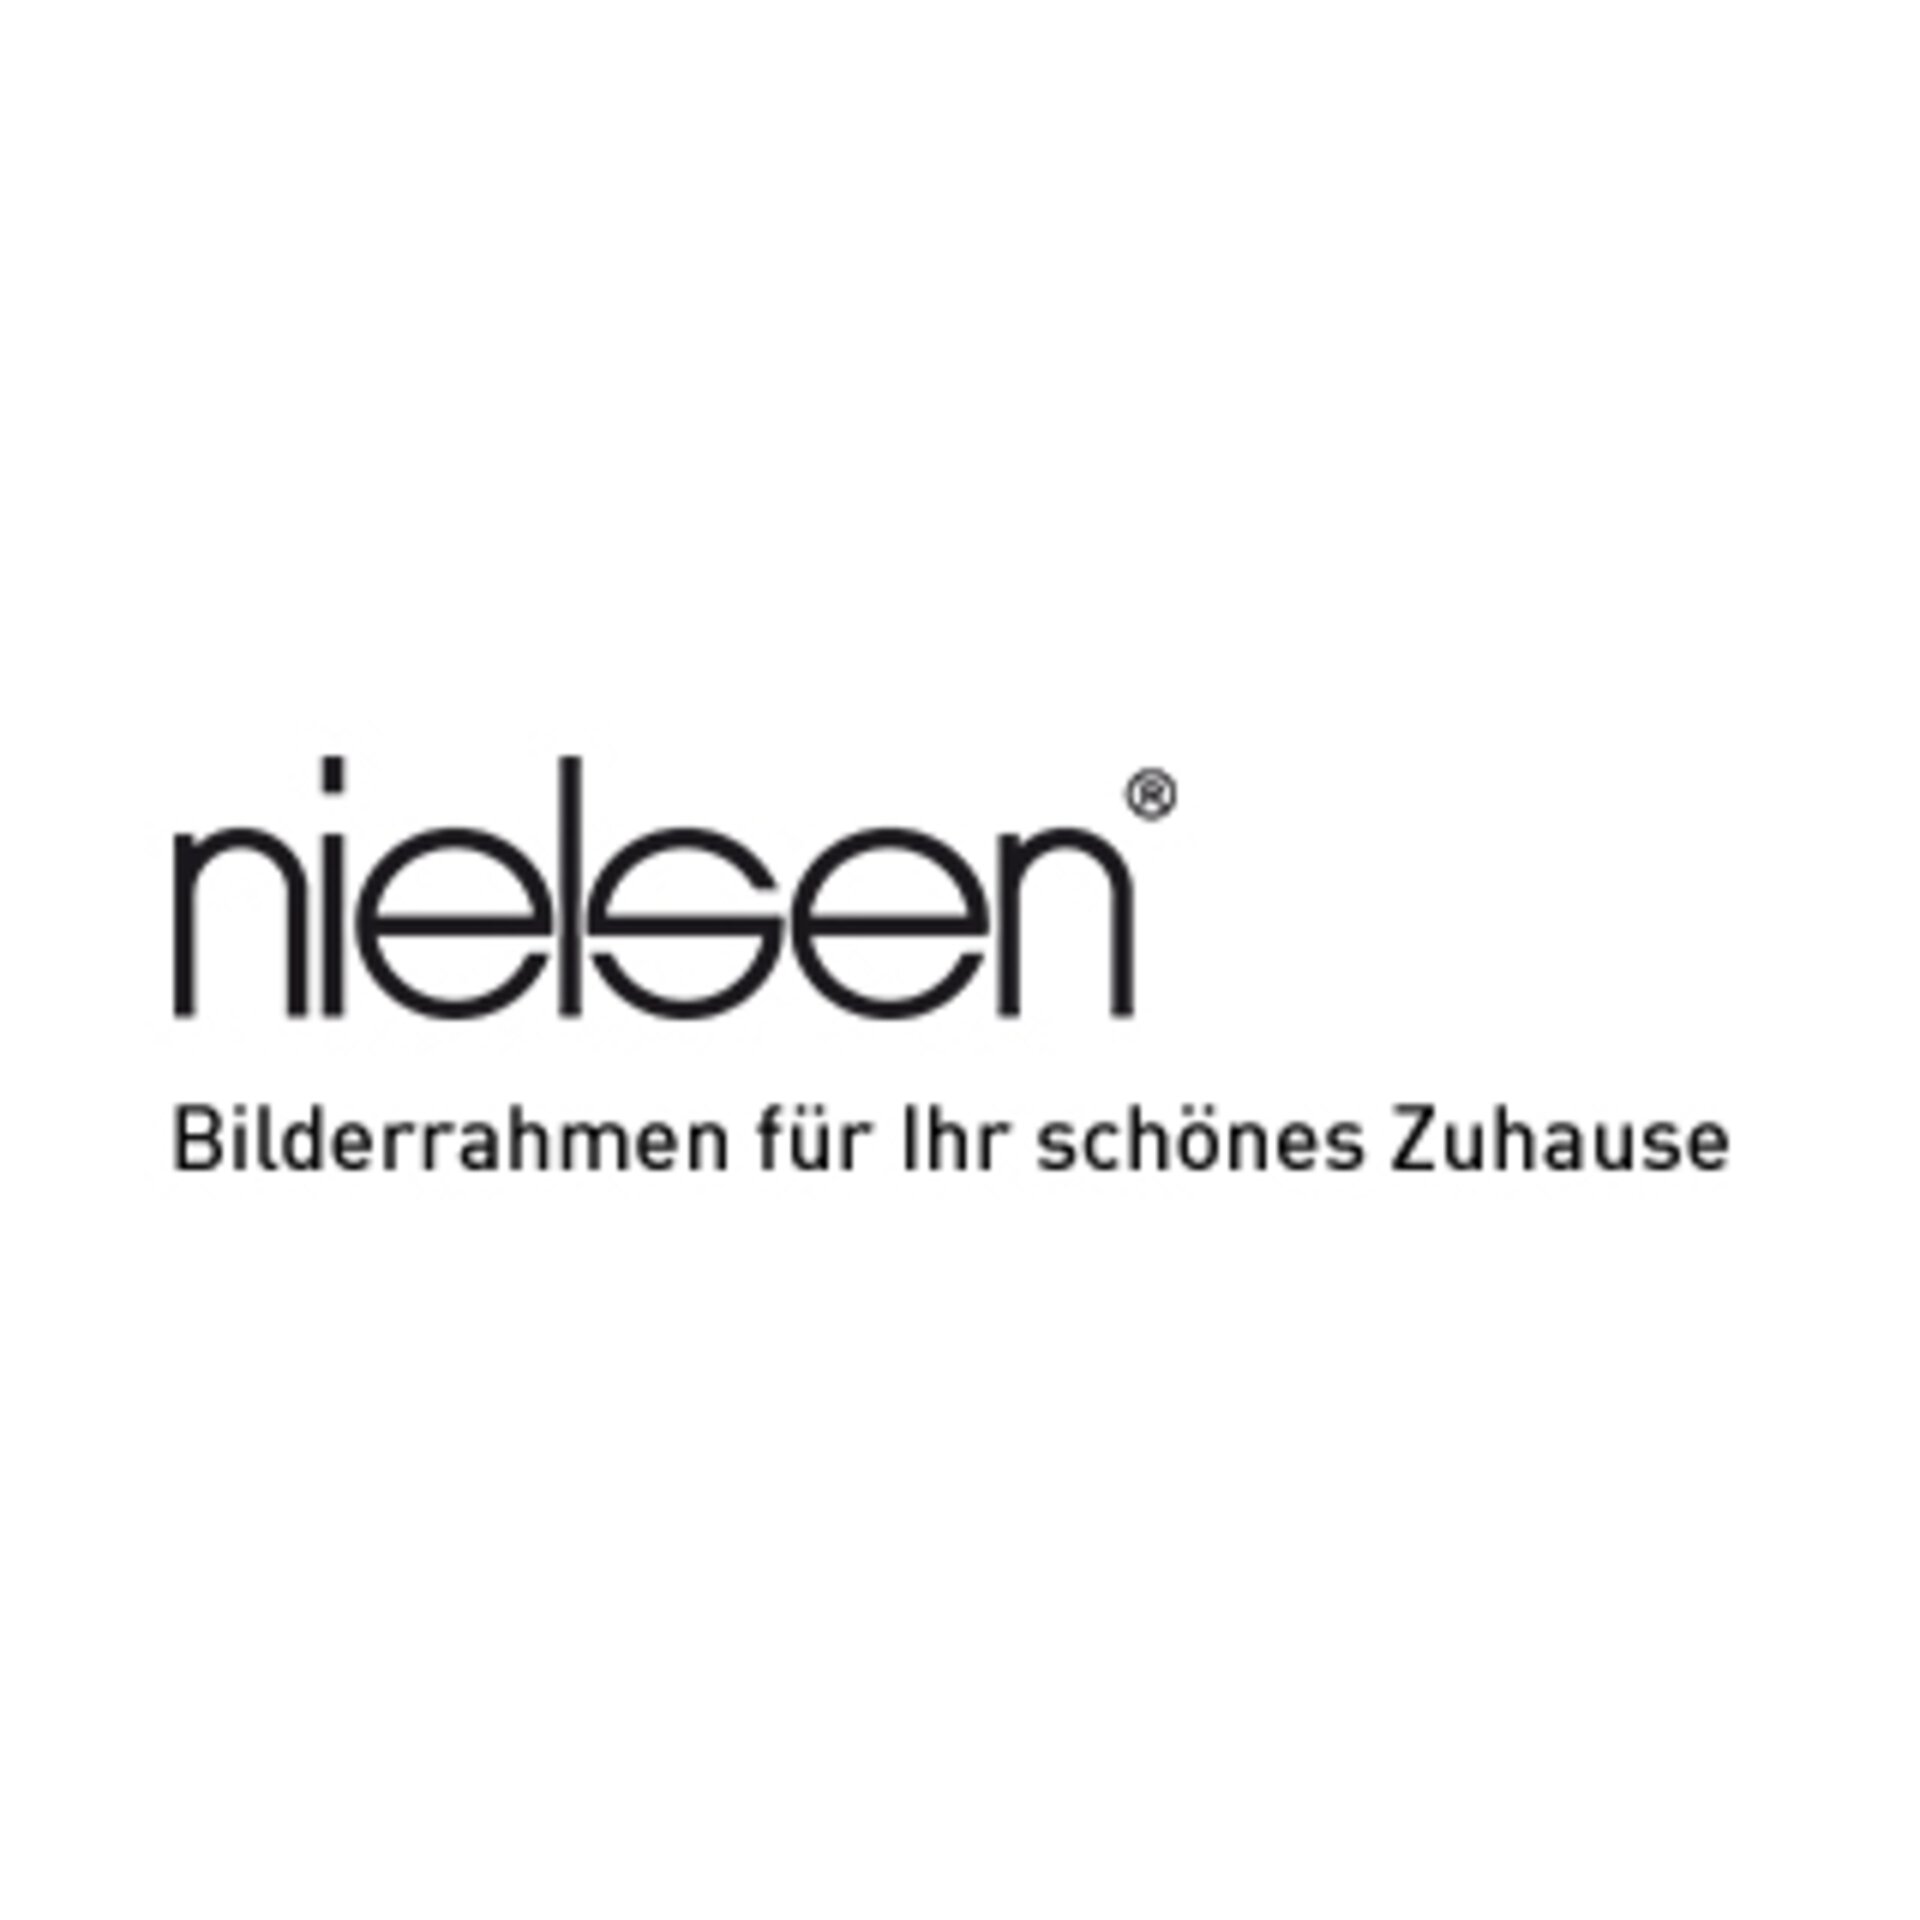 Logo "nielsen - Bilderrahmen für Ihr schönes Zuhause"